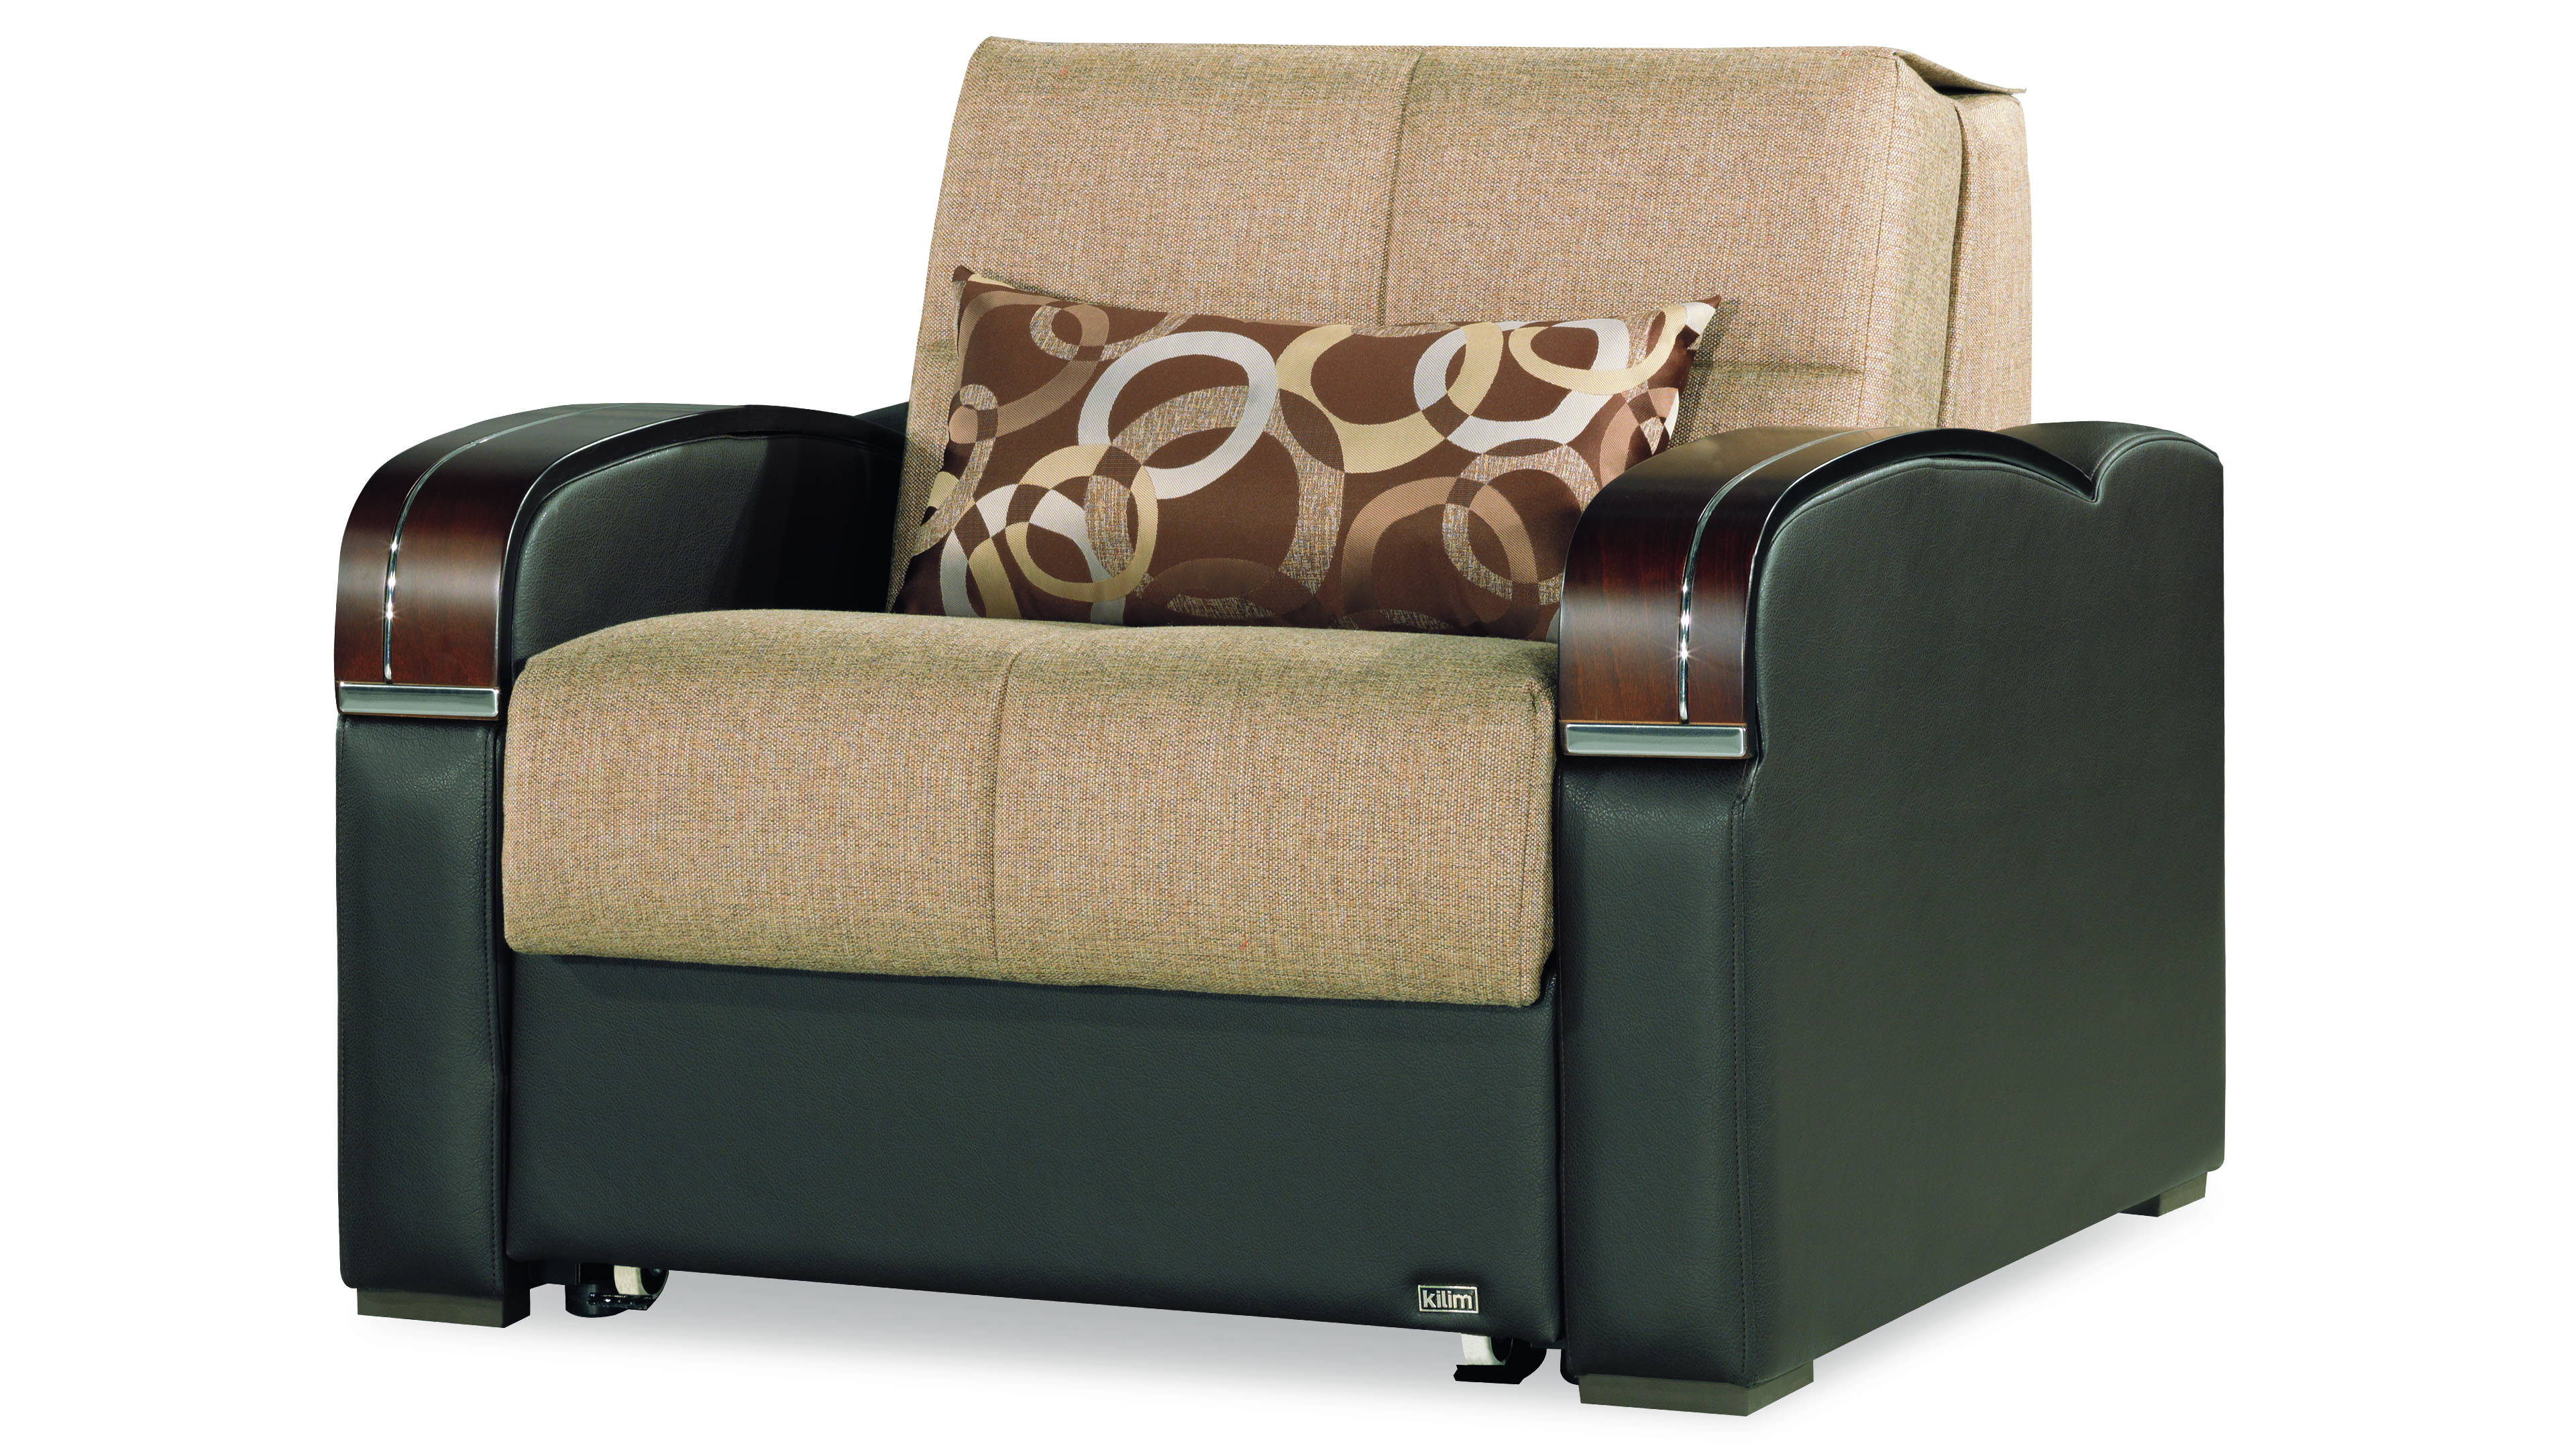 Sleep Plus Chair Sleeper, Brown Buy Online at Best Price